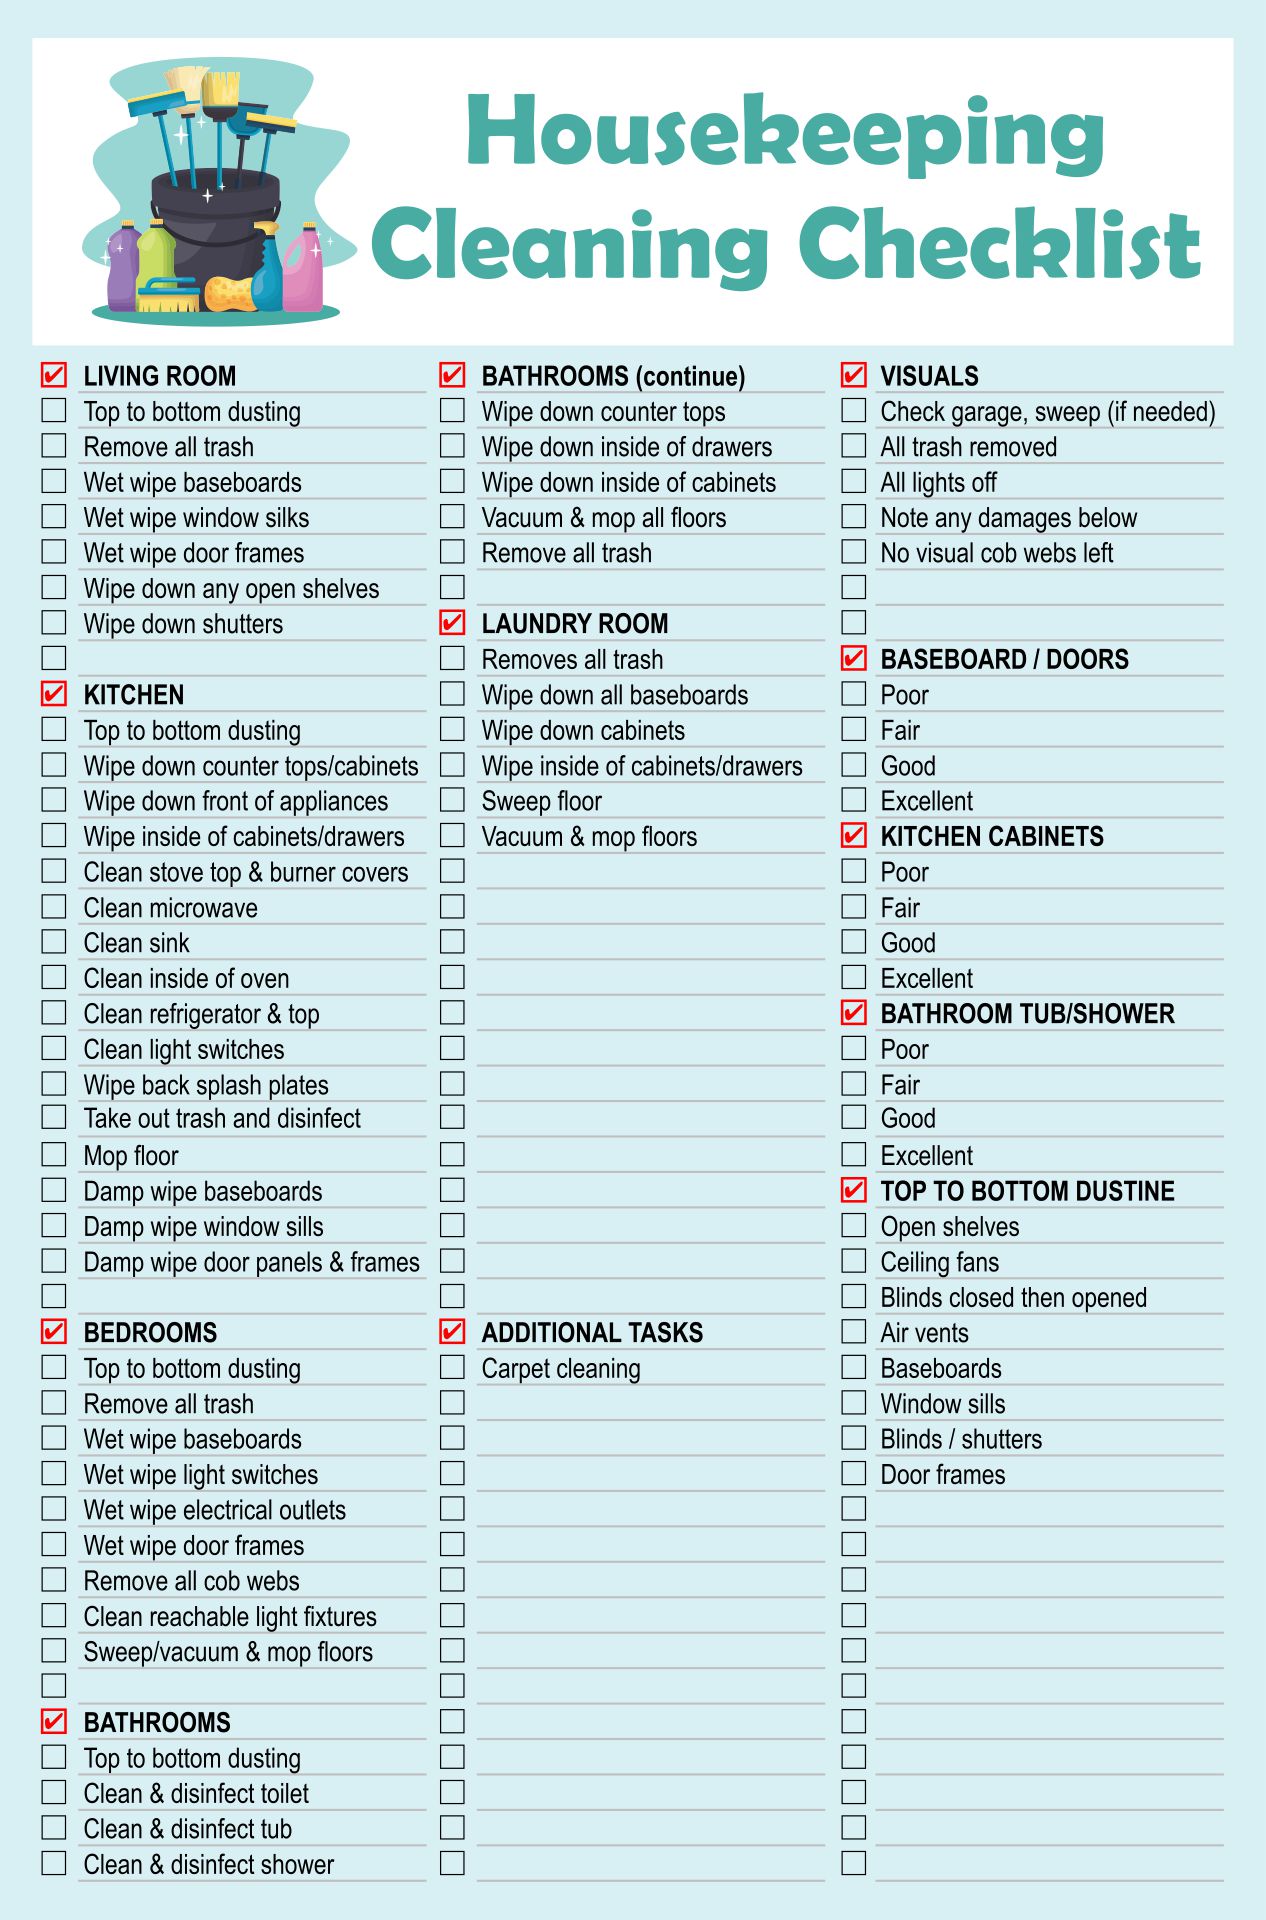 my stored procedure best practices checklist